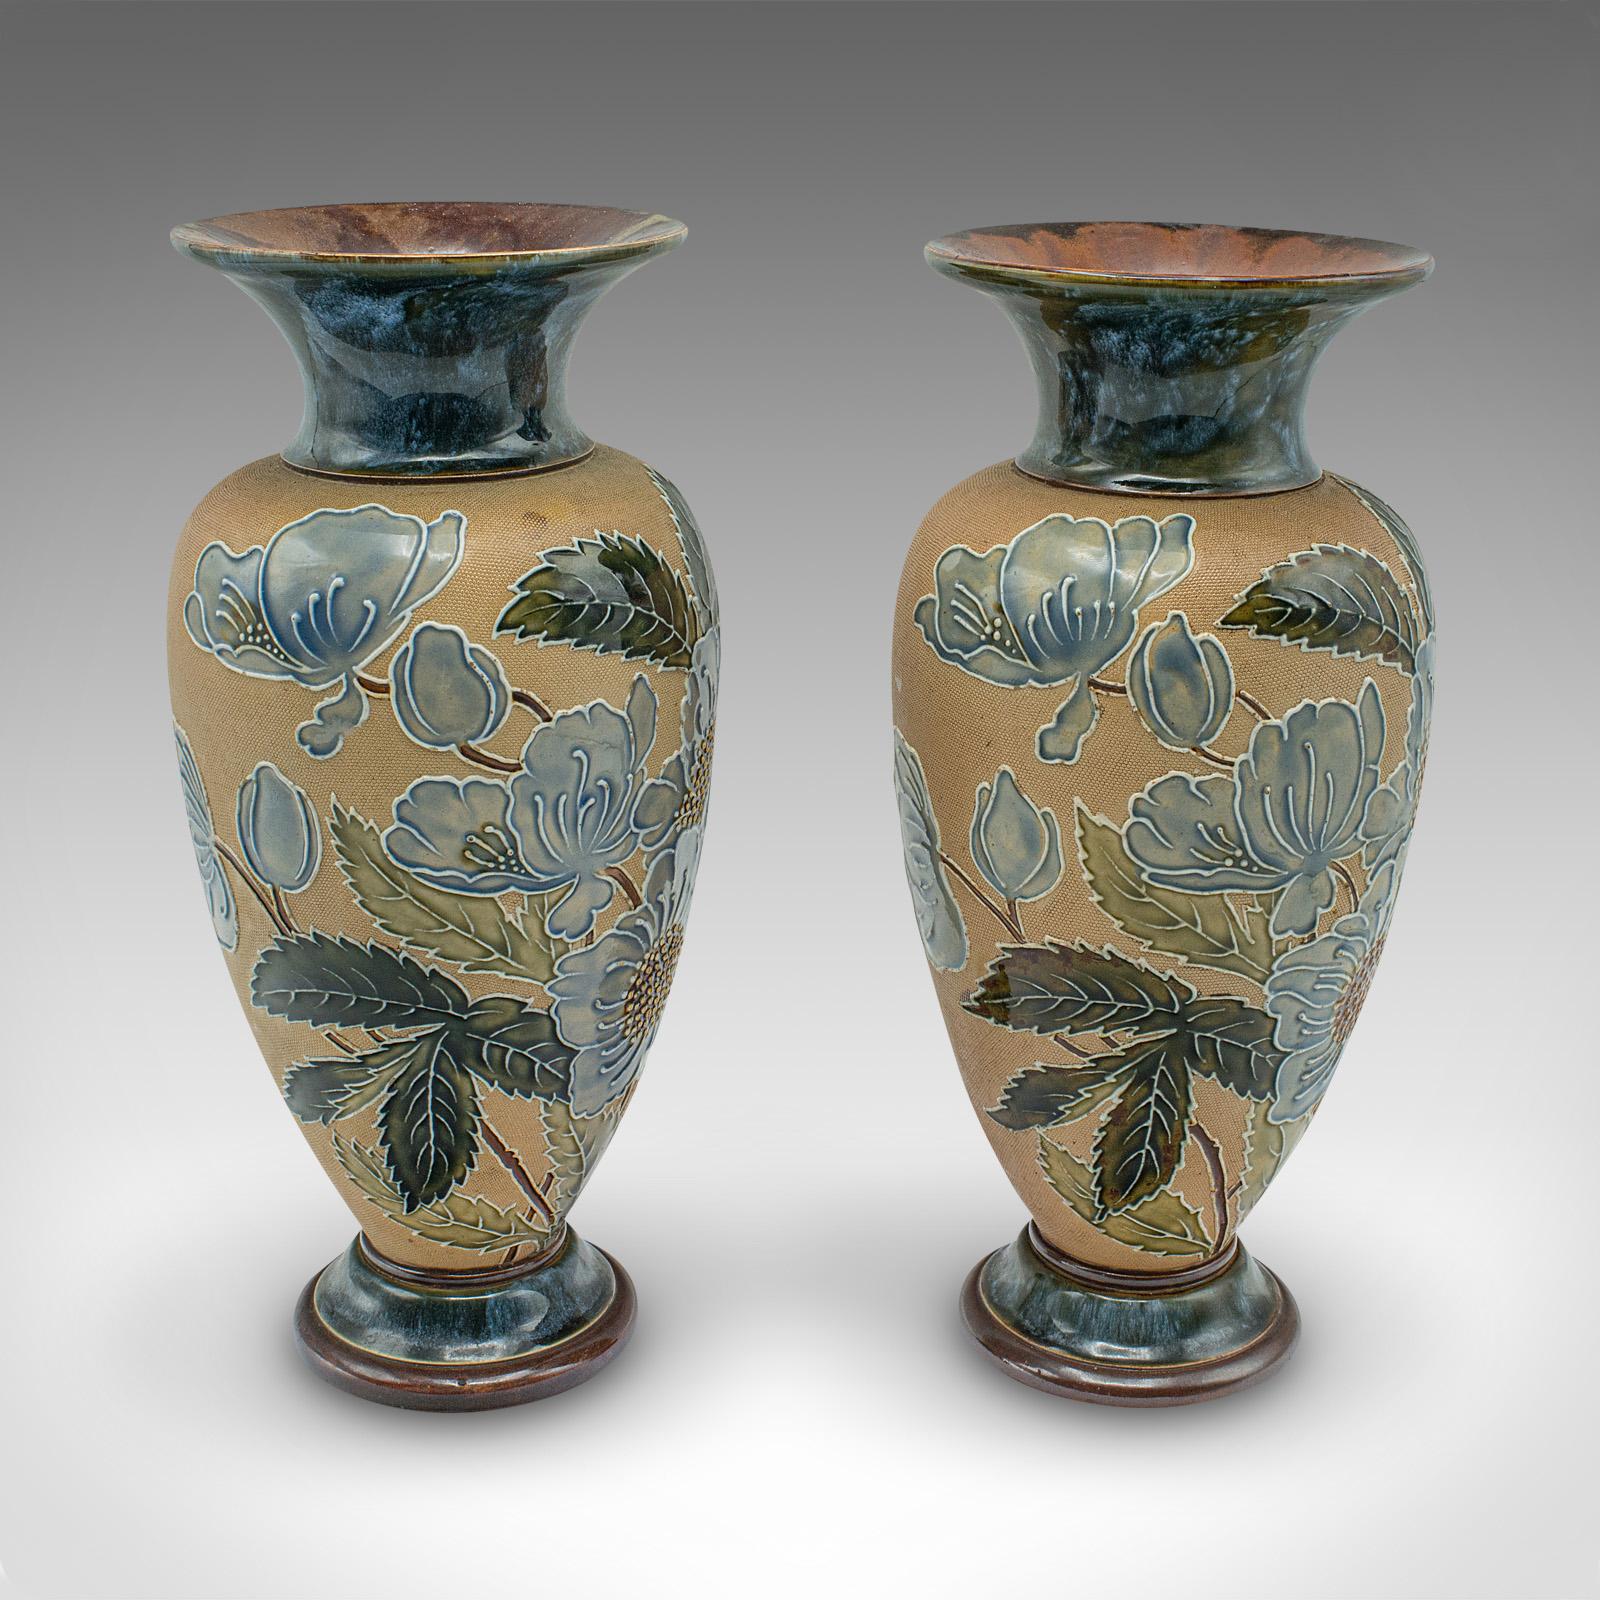 Il s'agit d'une paire de vases à fleurs anciens. Une urne de présentation anglaise en céramique, datant de la période édouardienne, vers 1910.

Le brevet de Slater consistait à appliquer de la dentelle humide sur l'argile, le résultat laissant un